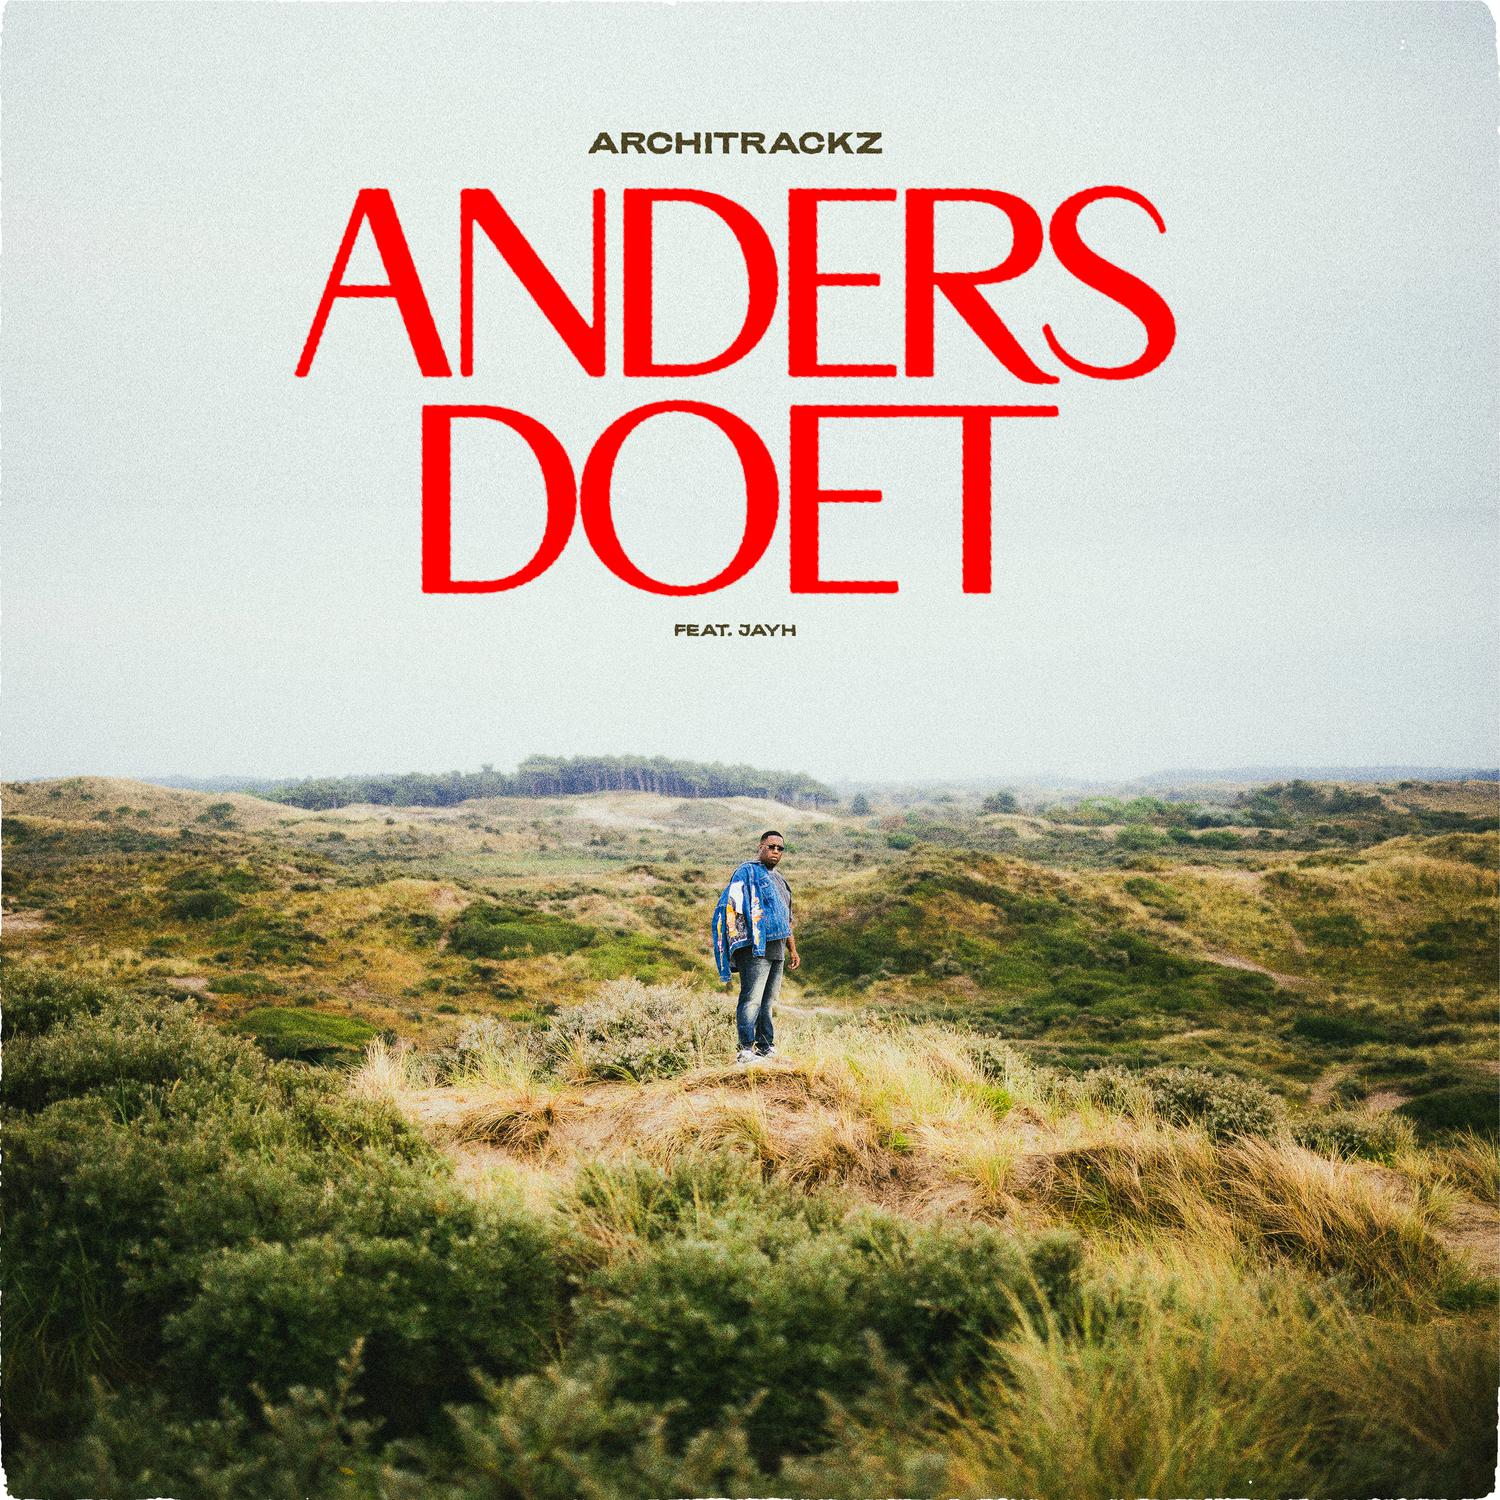 Architrackz - Anders Doet